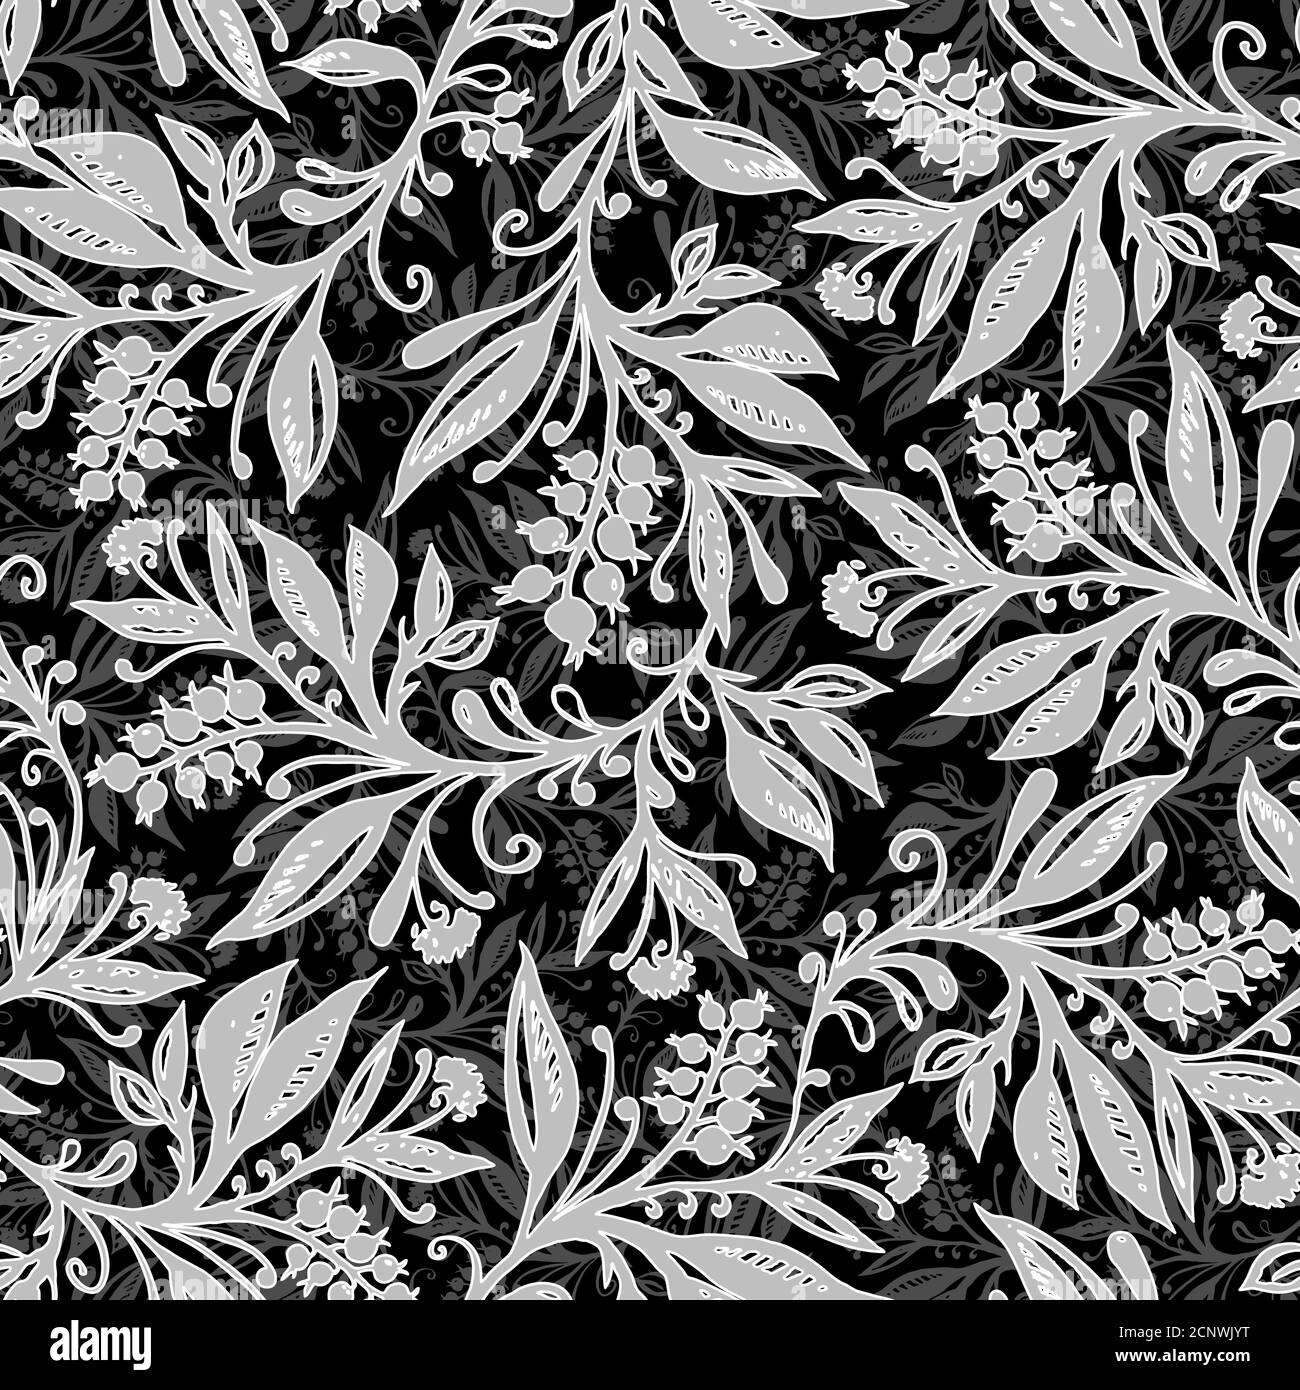 Florales Nahtloses Muster mit Blättern und Beeren in schwarz, weiß und grau. Handzeichnung. Hintergrund für Titel, Blog, Dekoration. Design für Tapeten, Textilien, Stoffe. Stock Vektor